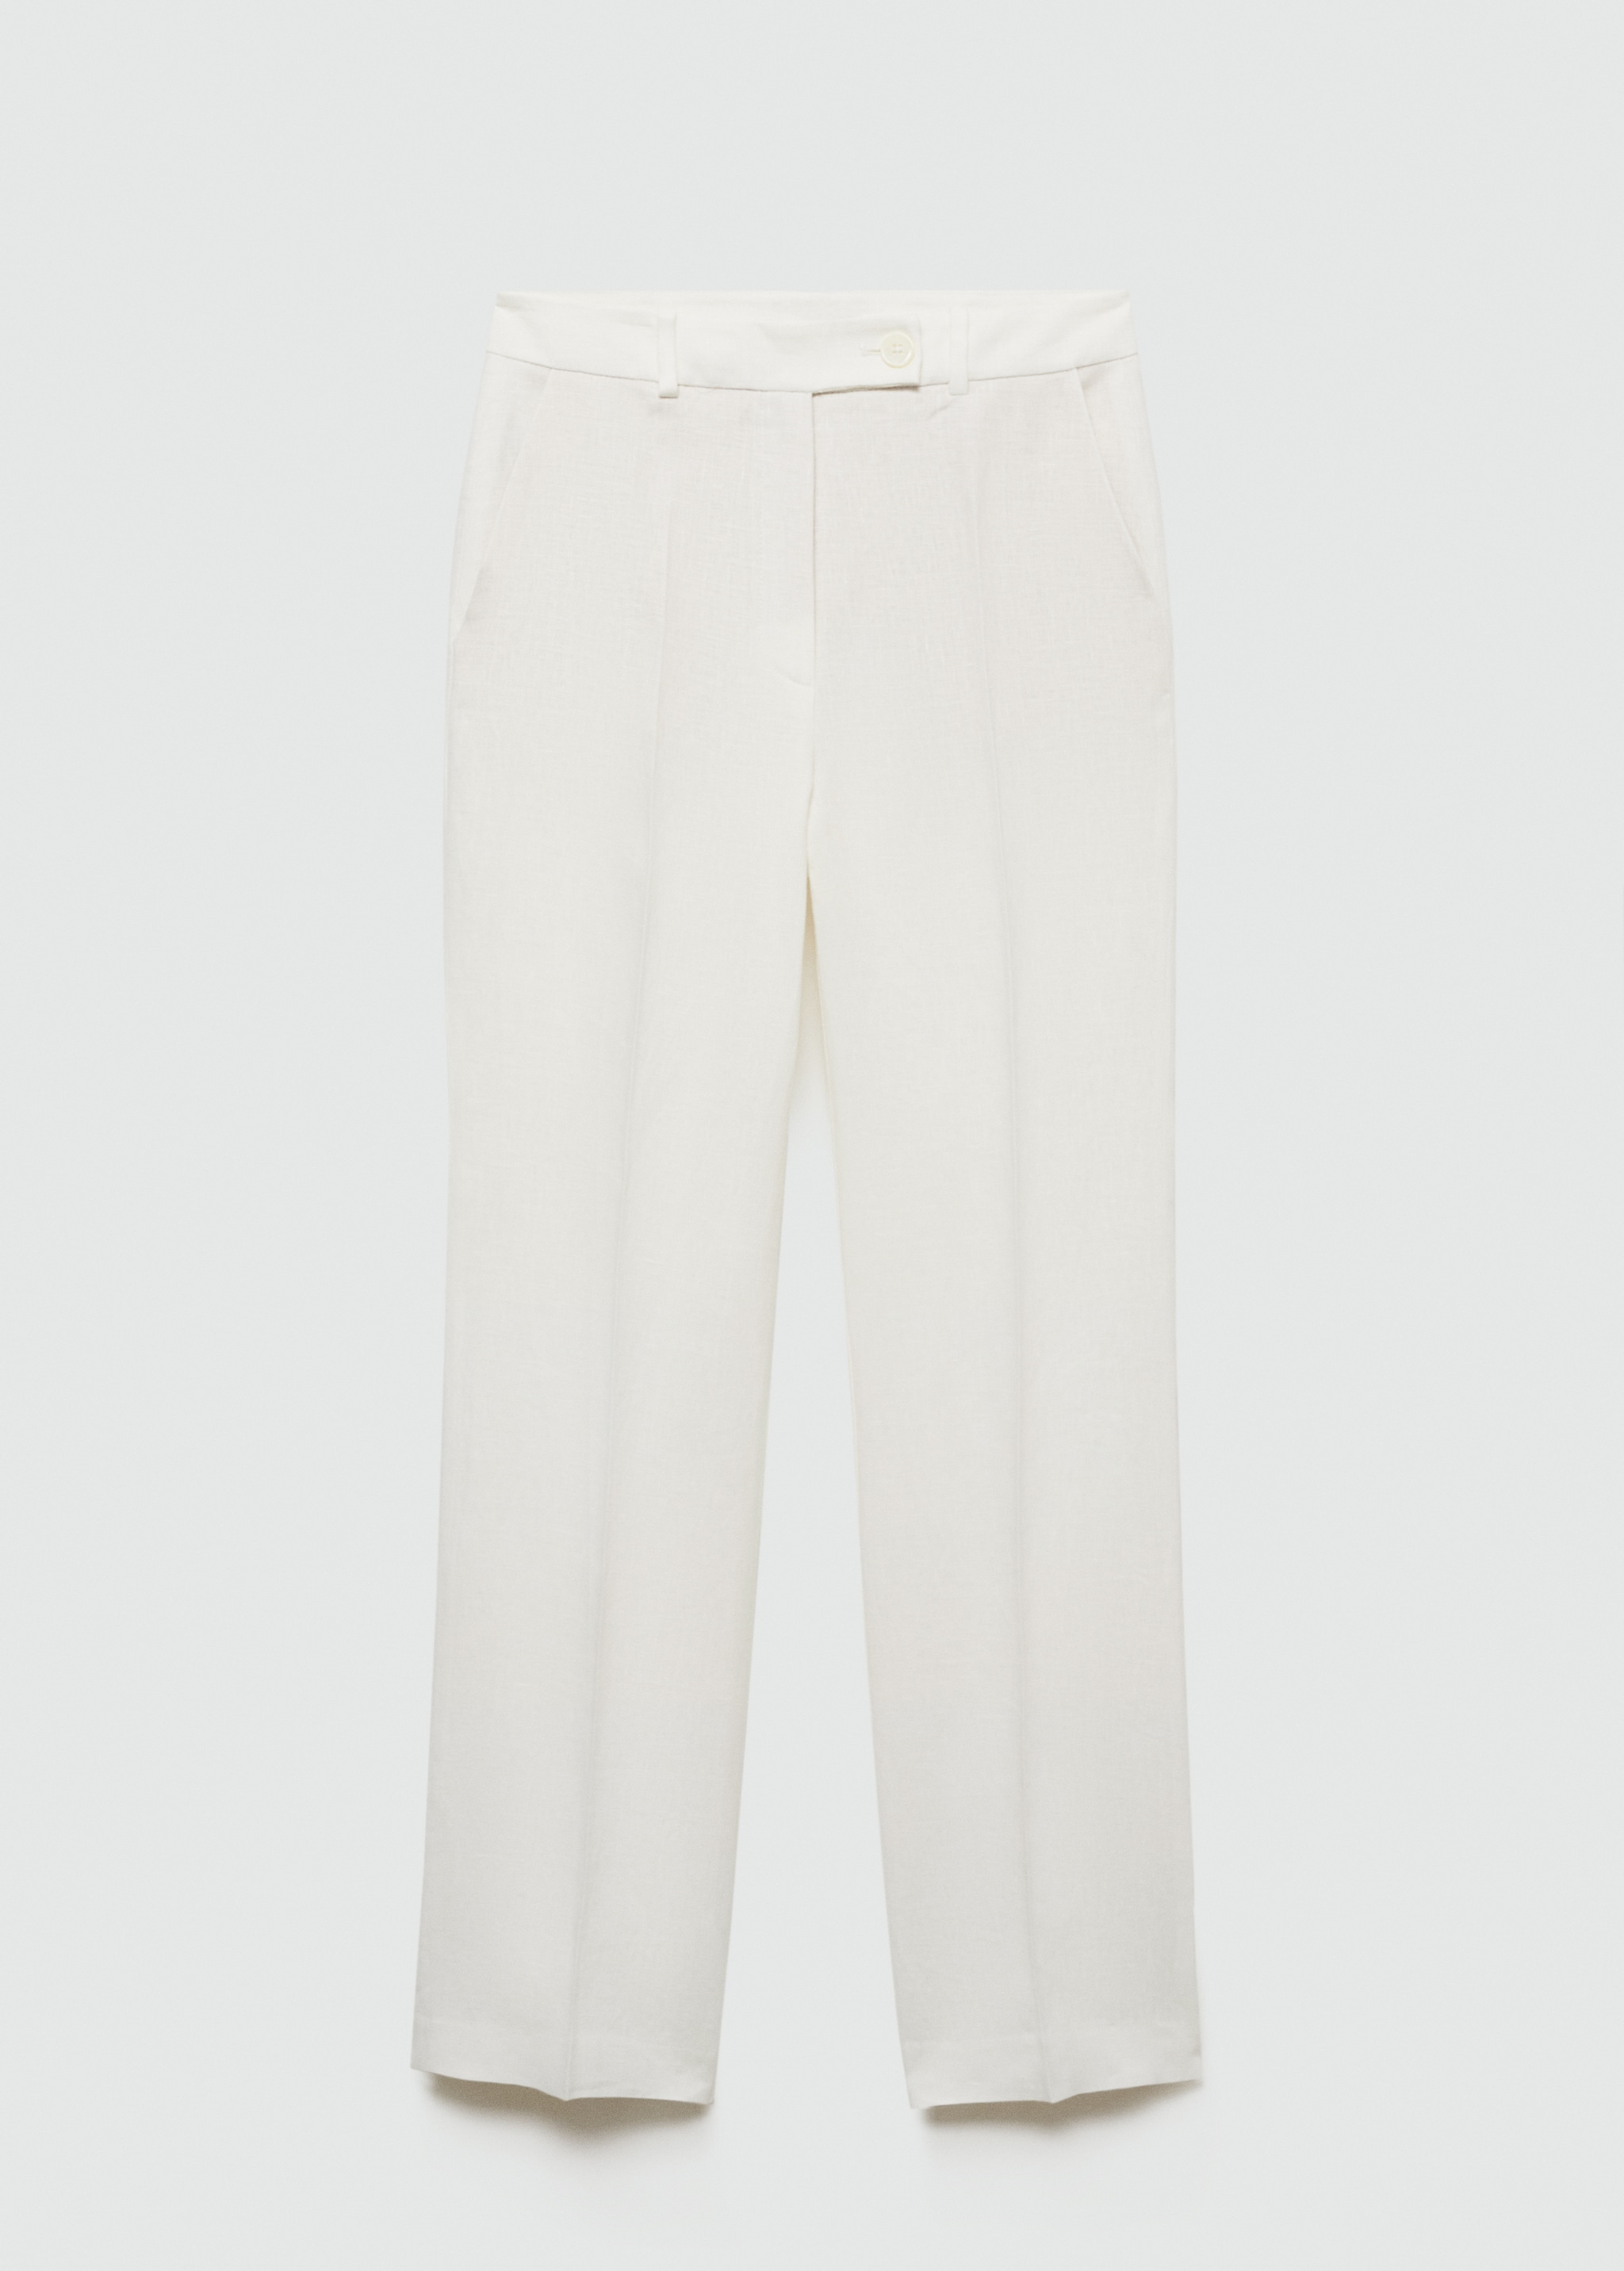 Pantaloni completo 100% lino - Articolo senza modello